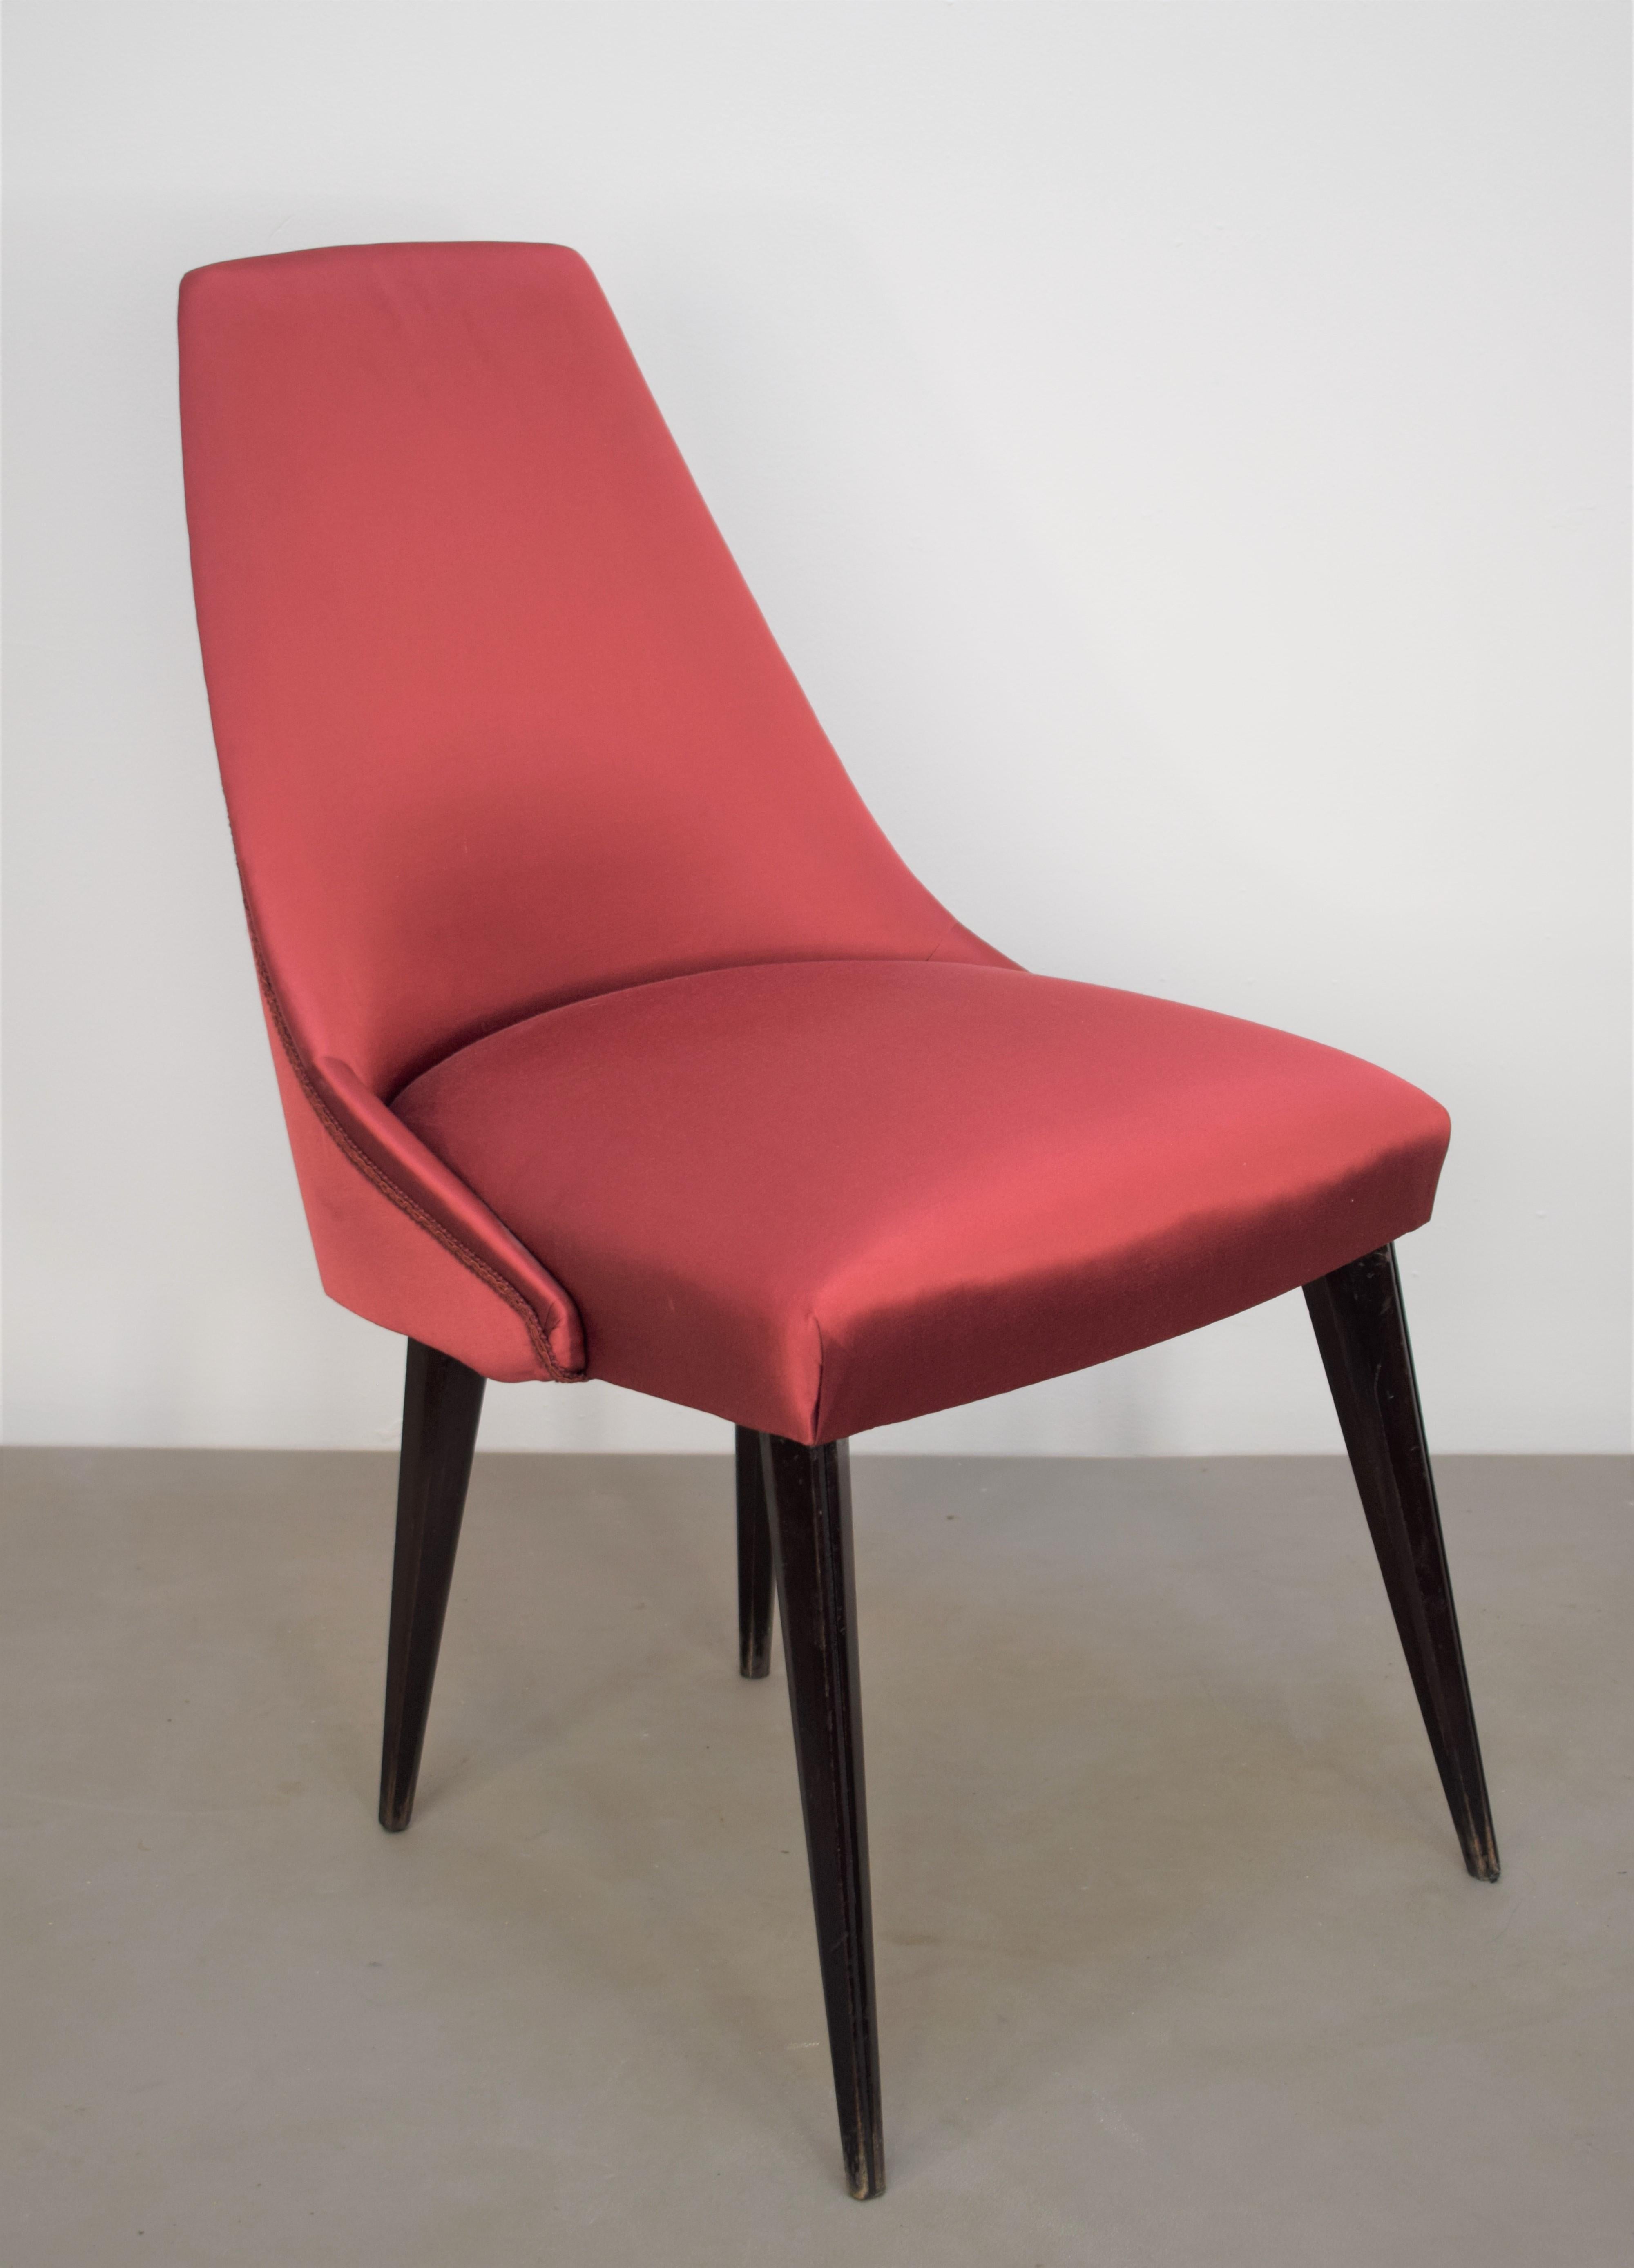 Set of 3 Italian Chairs, Osvaldo Borsani Style, 1960s For Sale 6